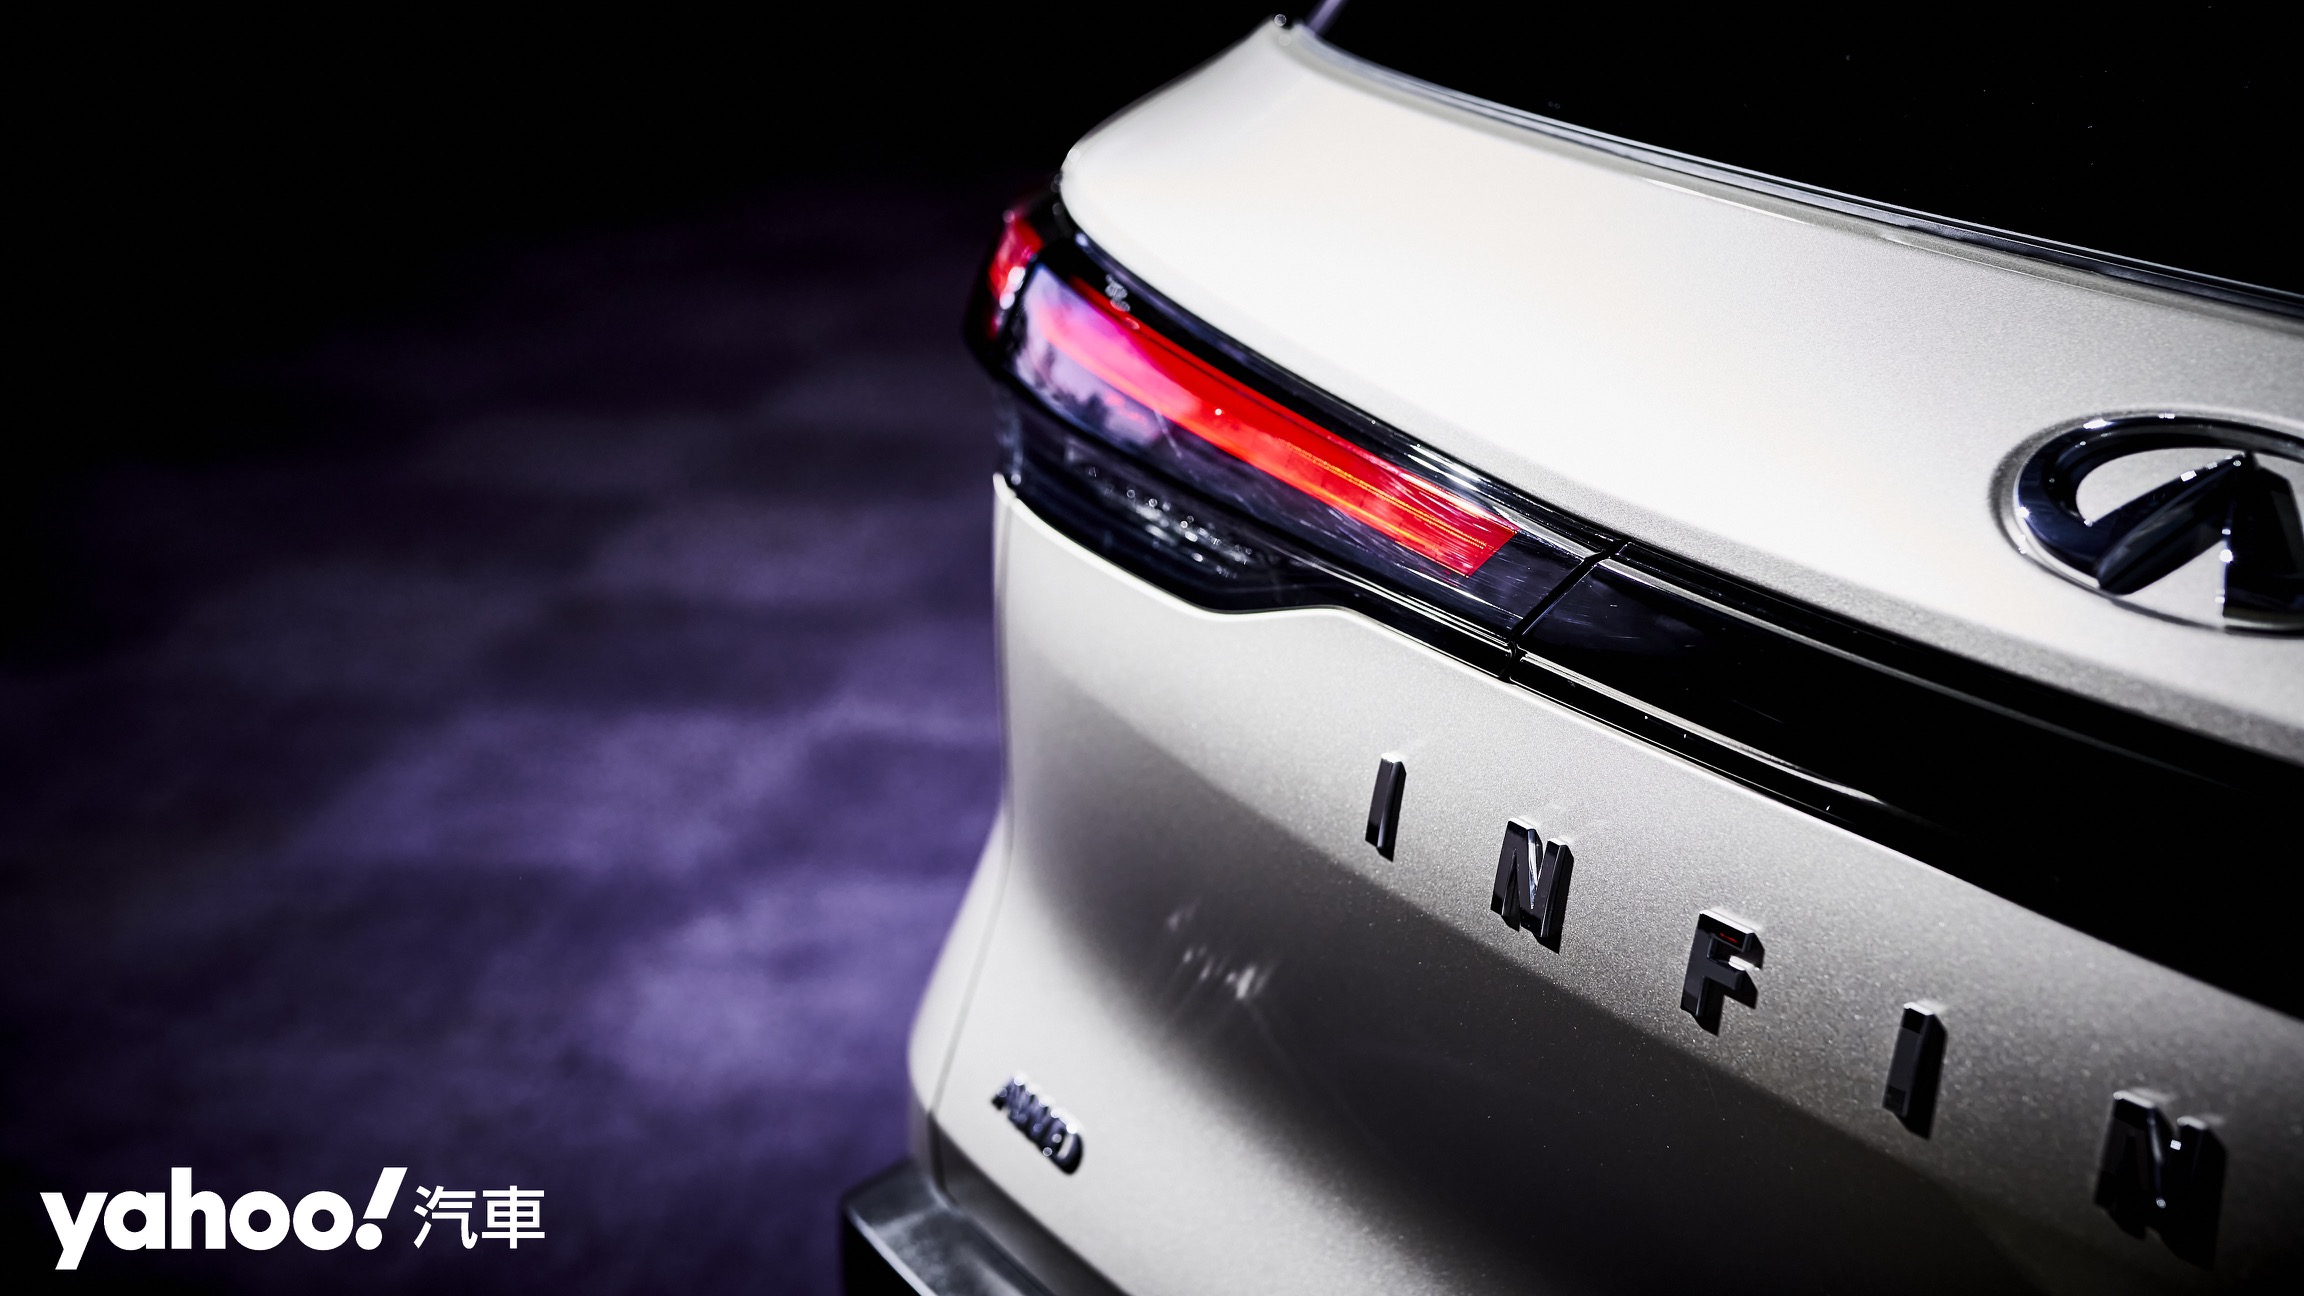 新世代Infiniti在視覺設計的提升確實有感。